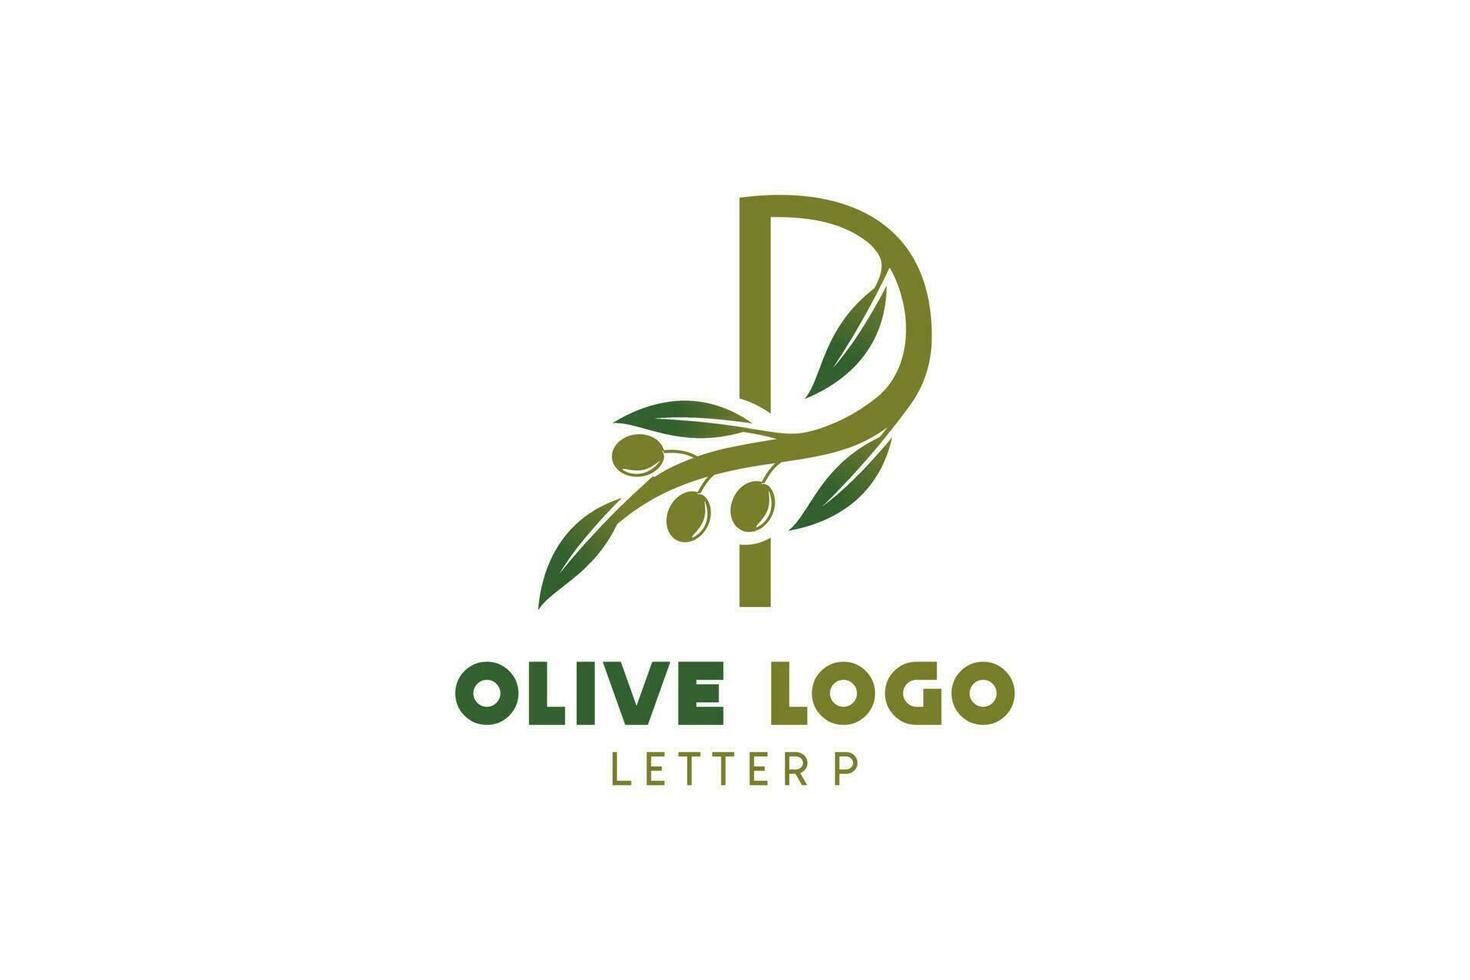 oliva logo design con lettera p concetto, naturale verde oliva vettore illustrazione